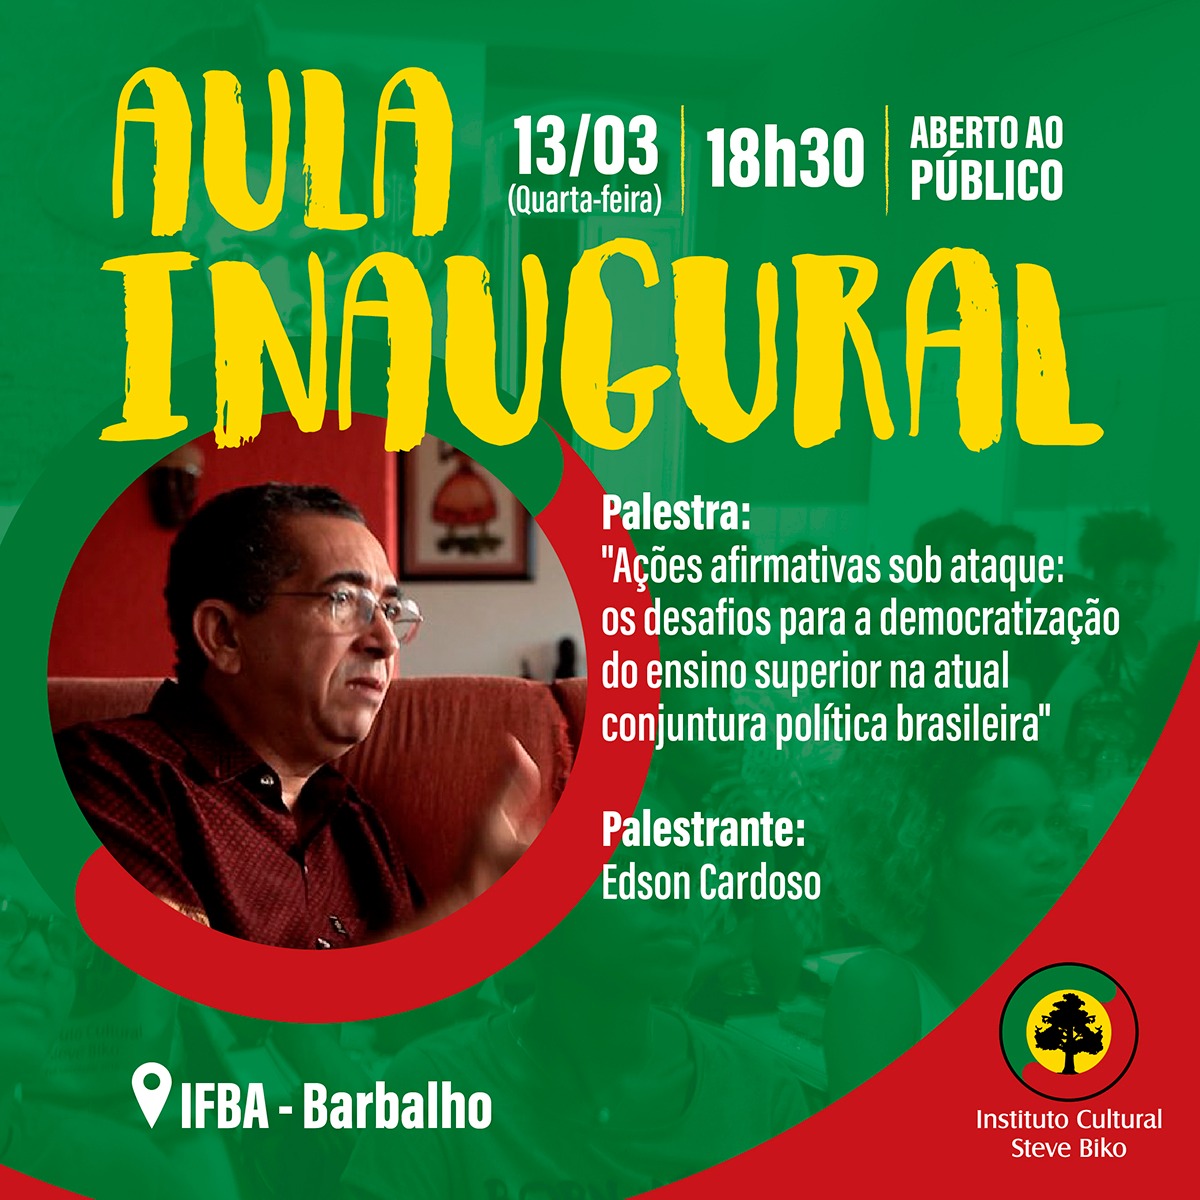 Pré-Biko - Aula Inaugural com Edson Cardoso será aberta ao público 